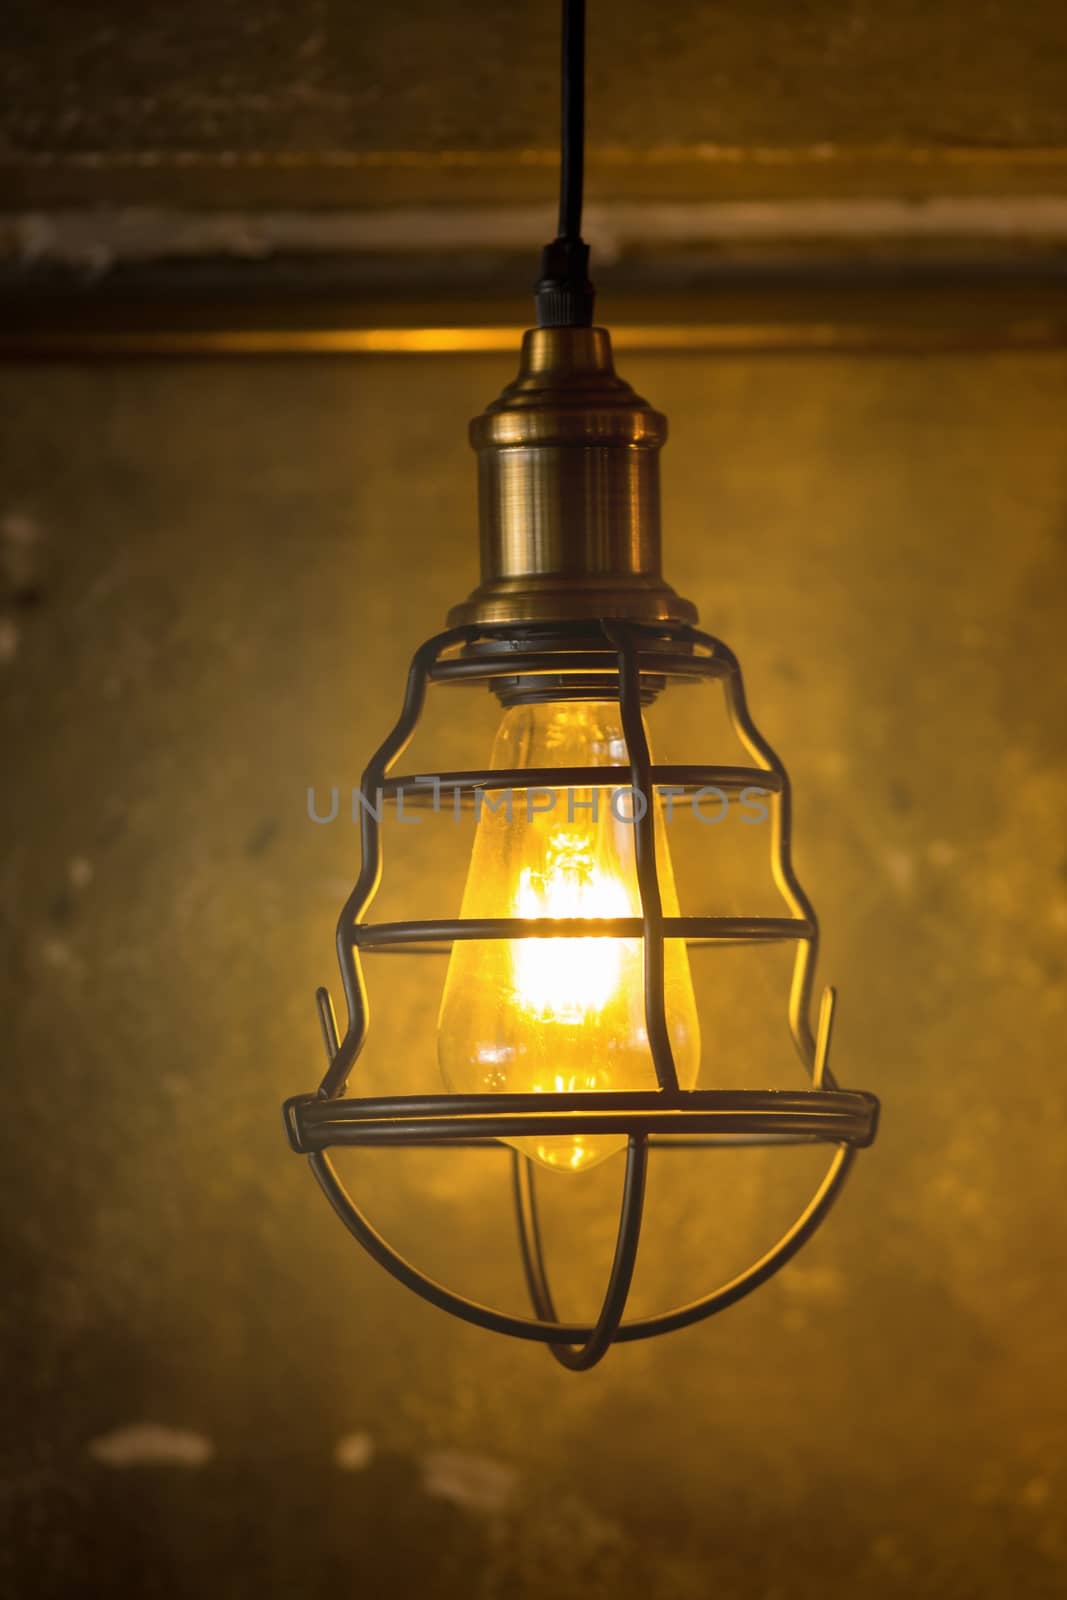 Decorative antique edison style light bulbs against brick wall b by kaiskynet